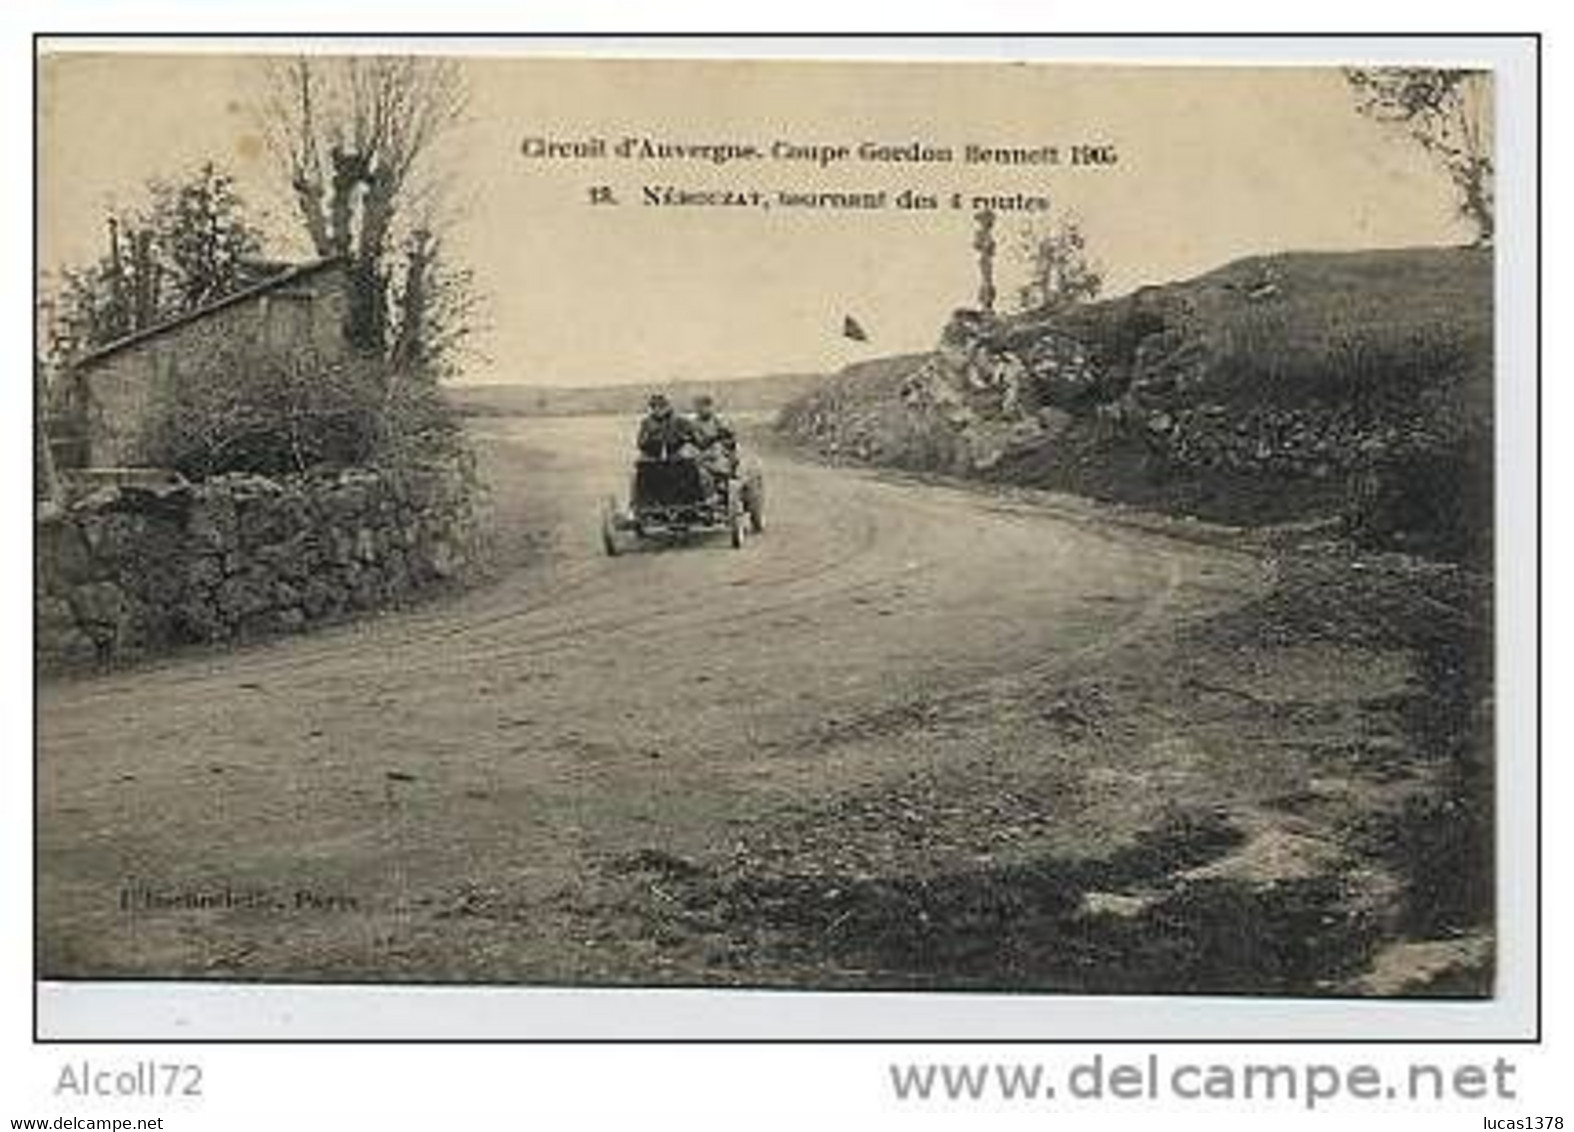 Circuit D'Auvergne.Coupe Gordon Bennet 1905.18.Nébouzat,tournant Des 4 Routes - Rallye